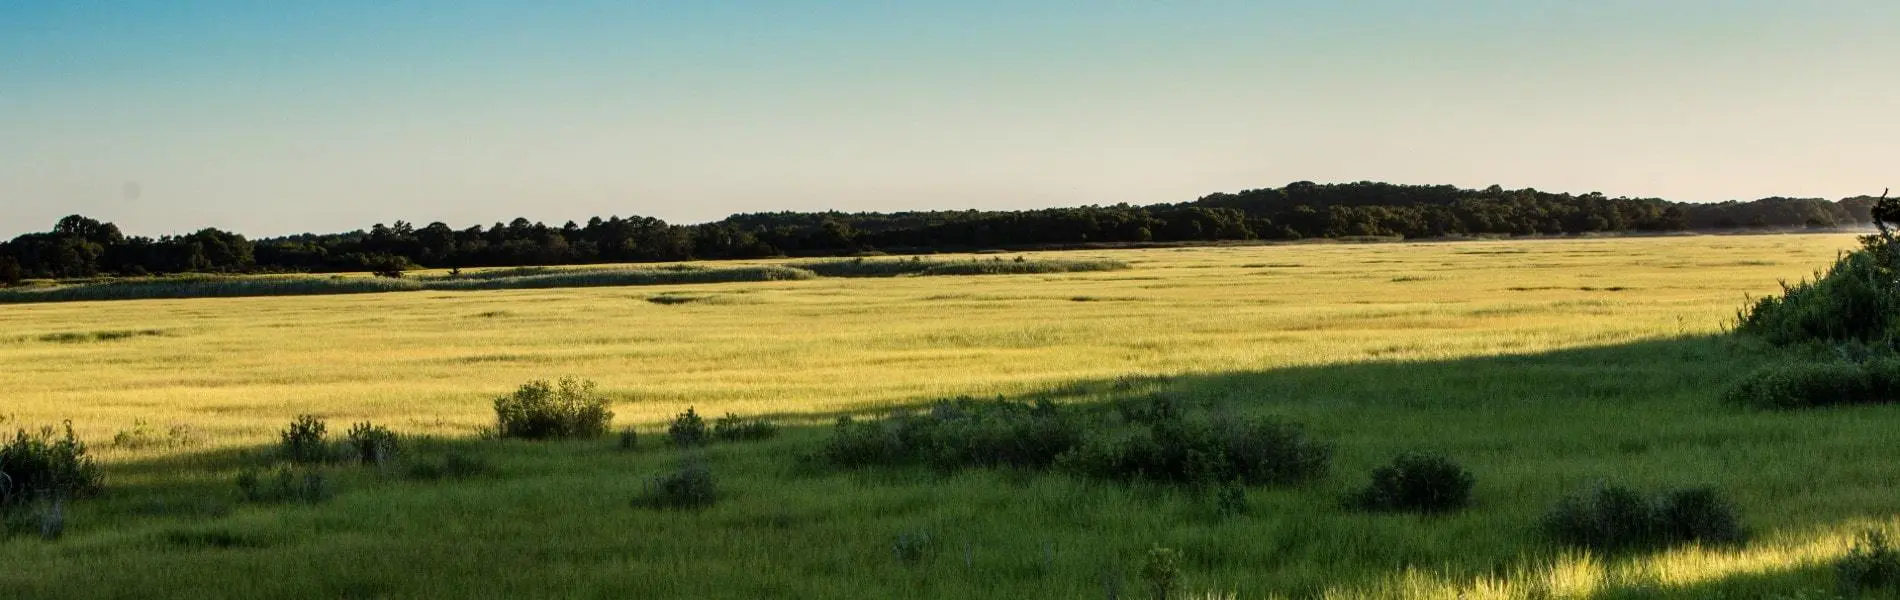 Marshy landscape area near Selbyville, Delaware